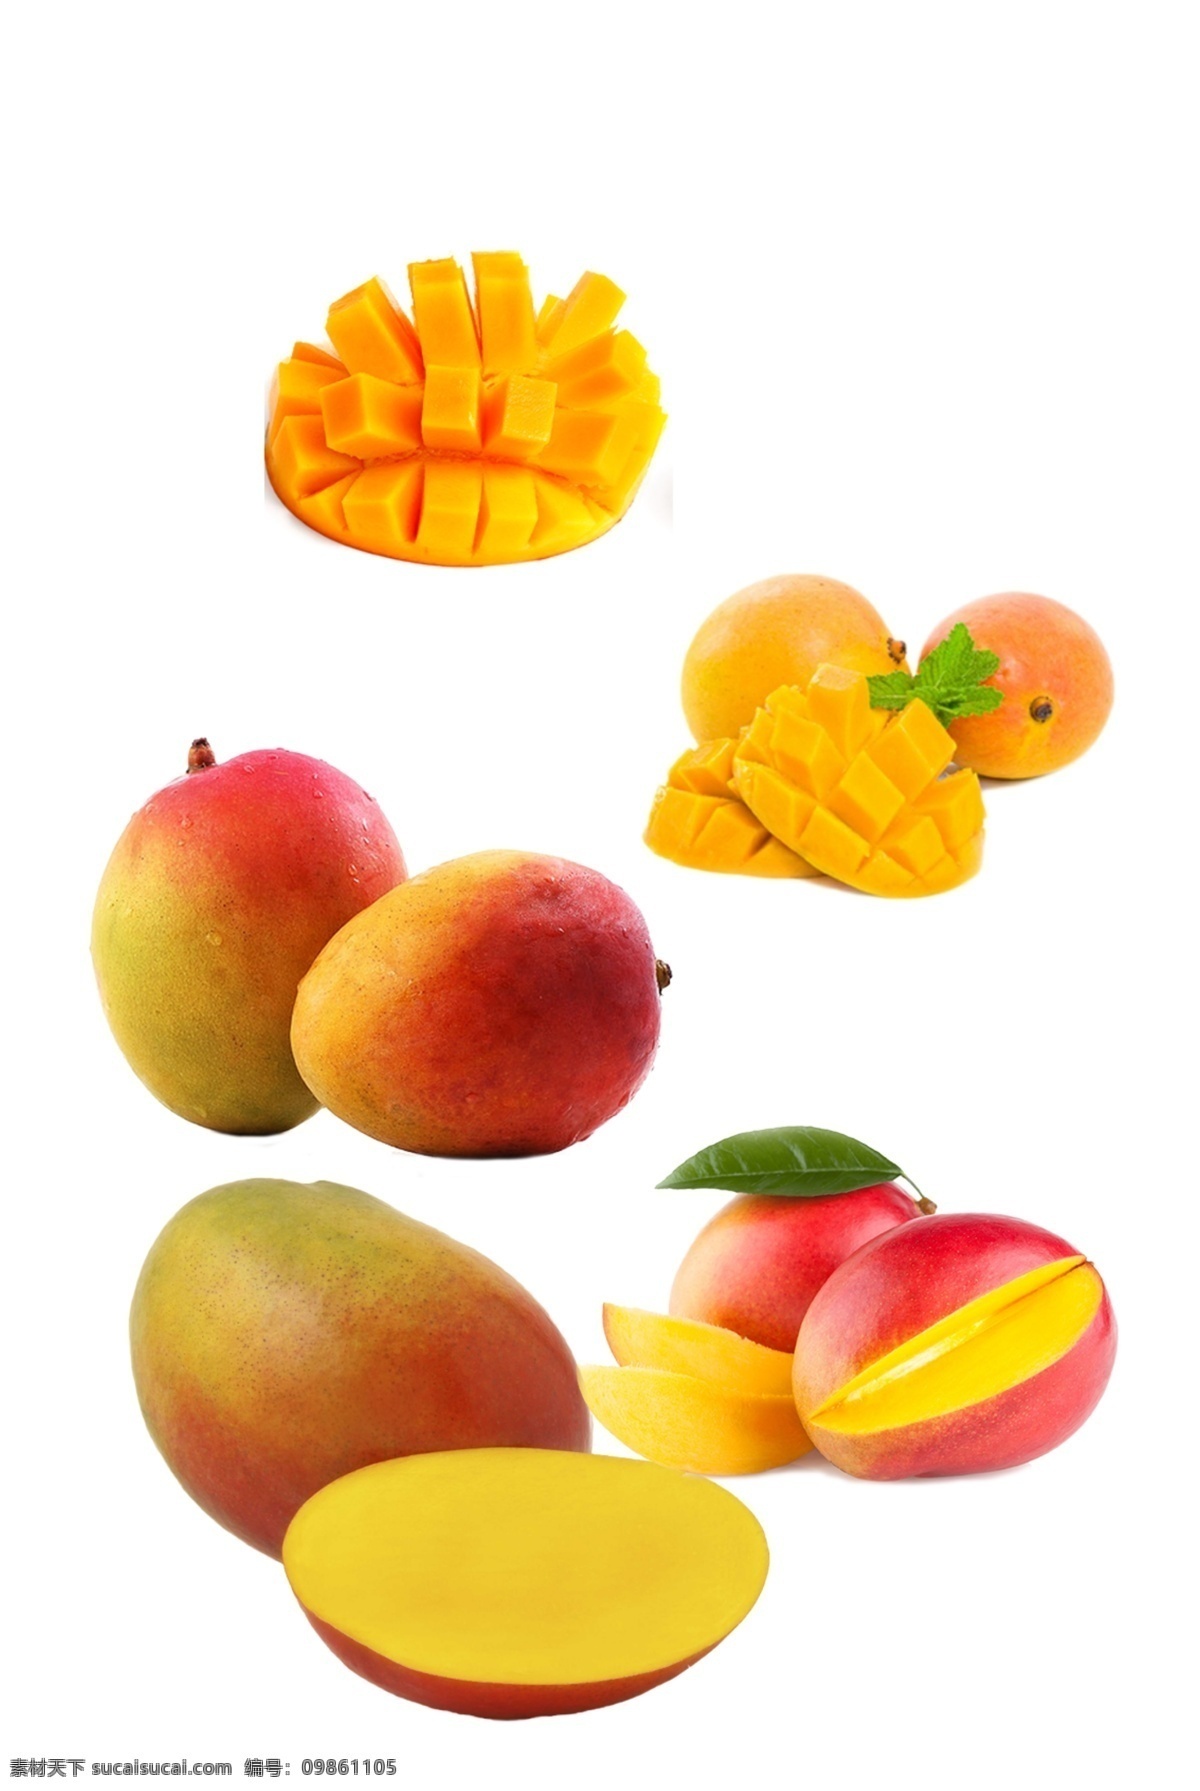 芒果图片 水果芒果 芒果文化 芒果展板 芒果包装 水果店芒果 水果店 芒果宣传册